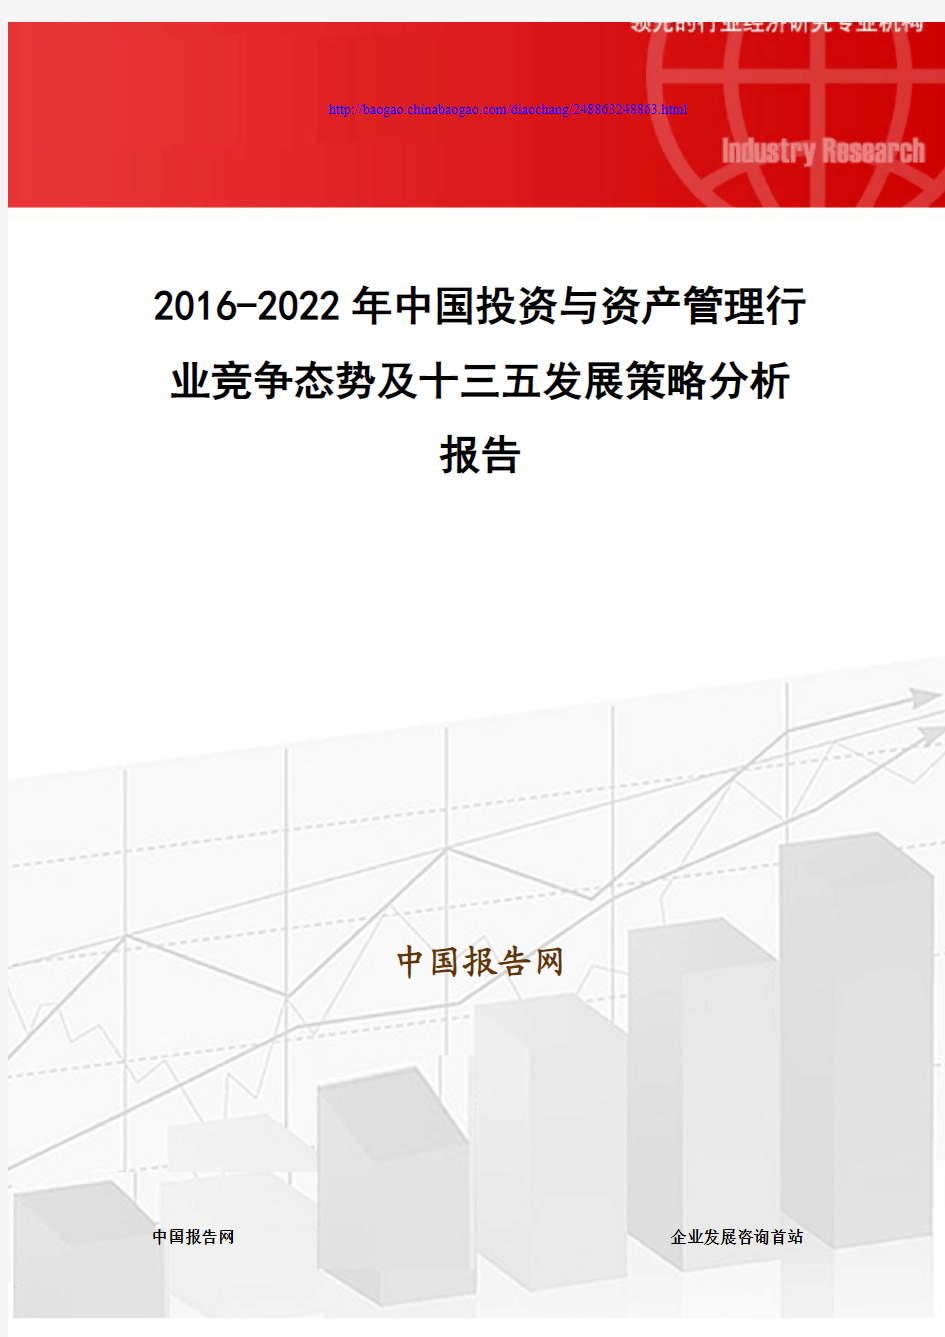 2016-2022年中国投资与资产管理行业竞争态势及十三五发展策略分析报告